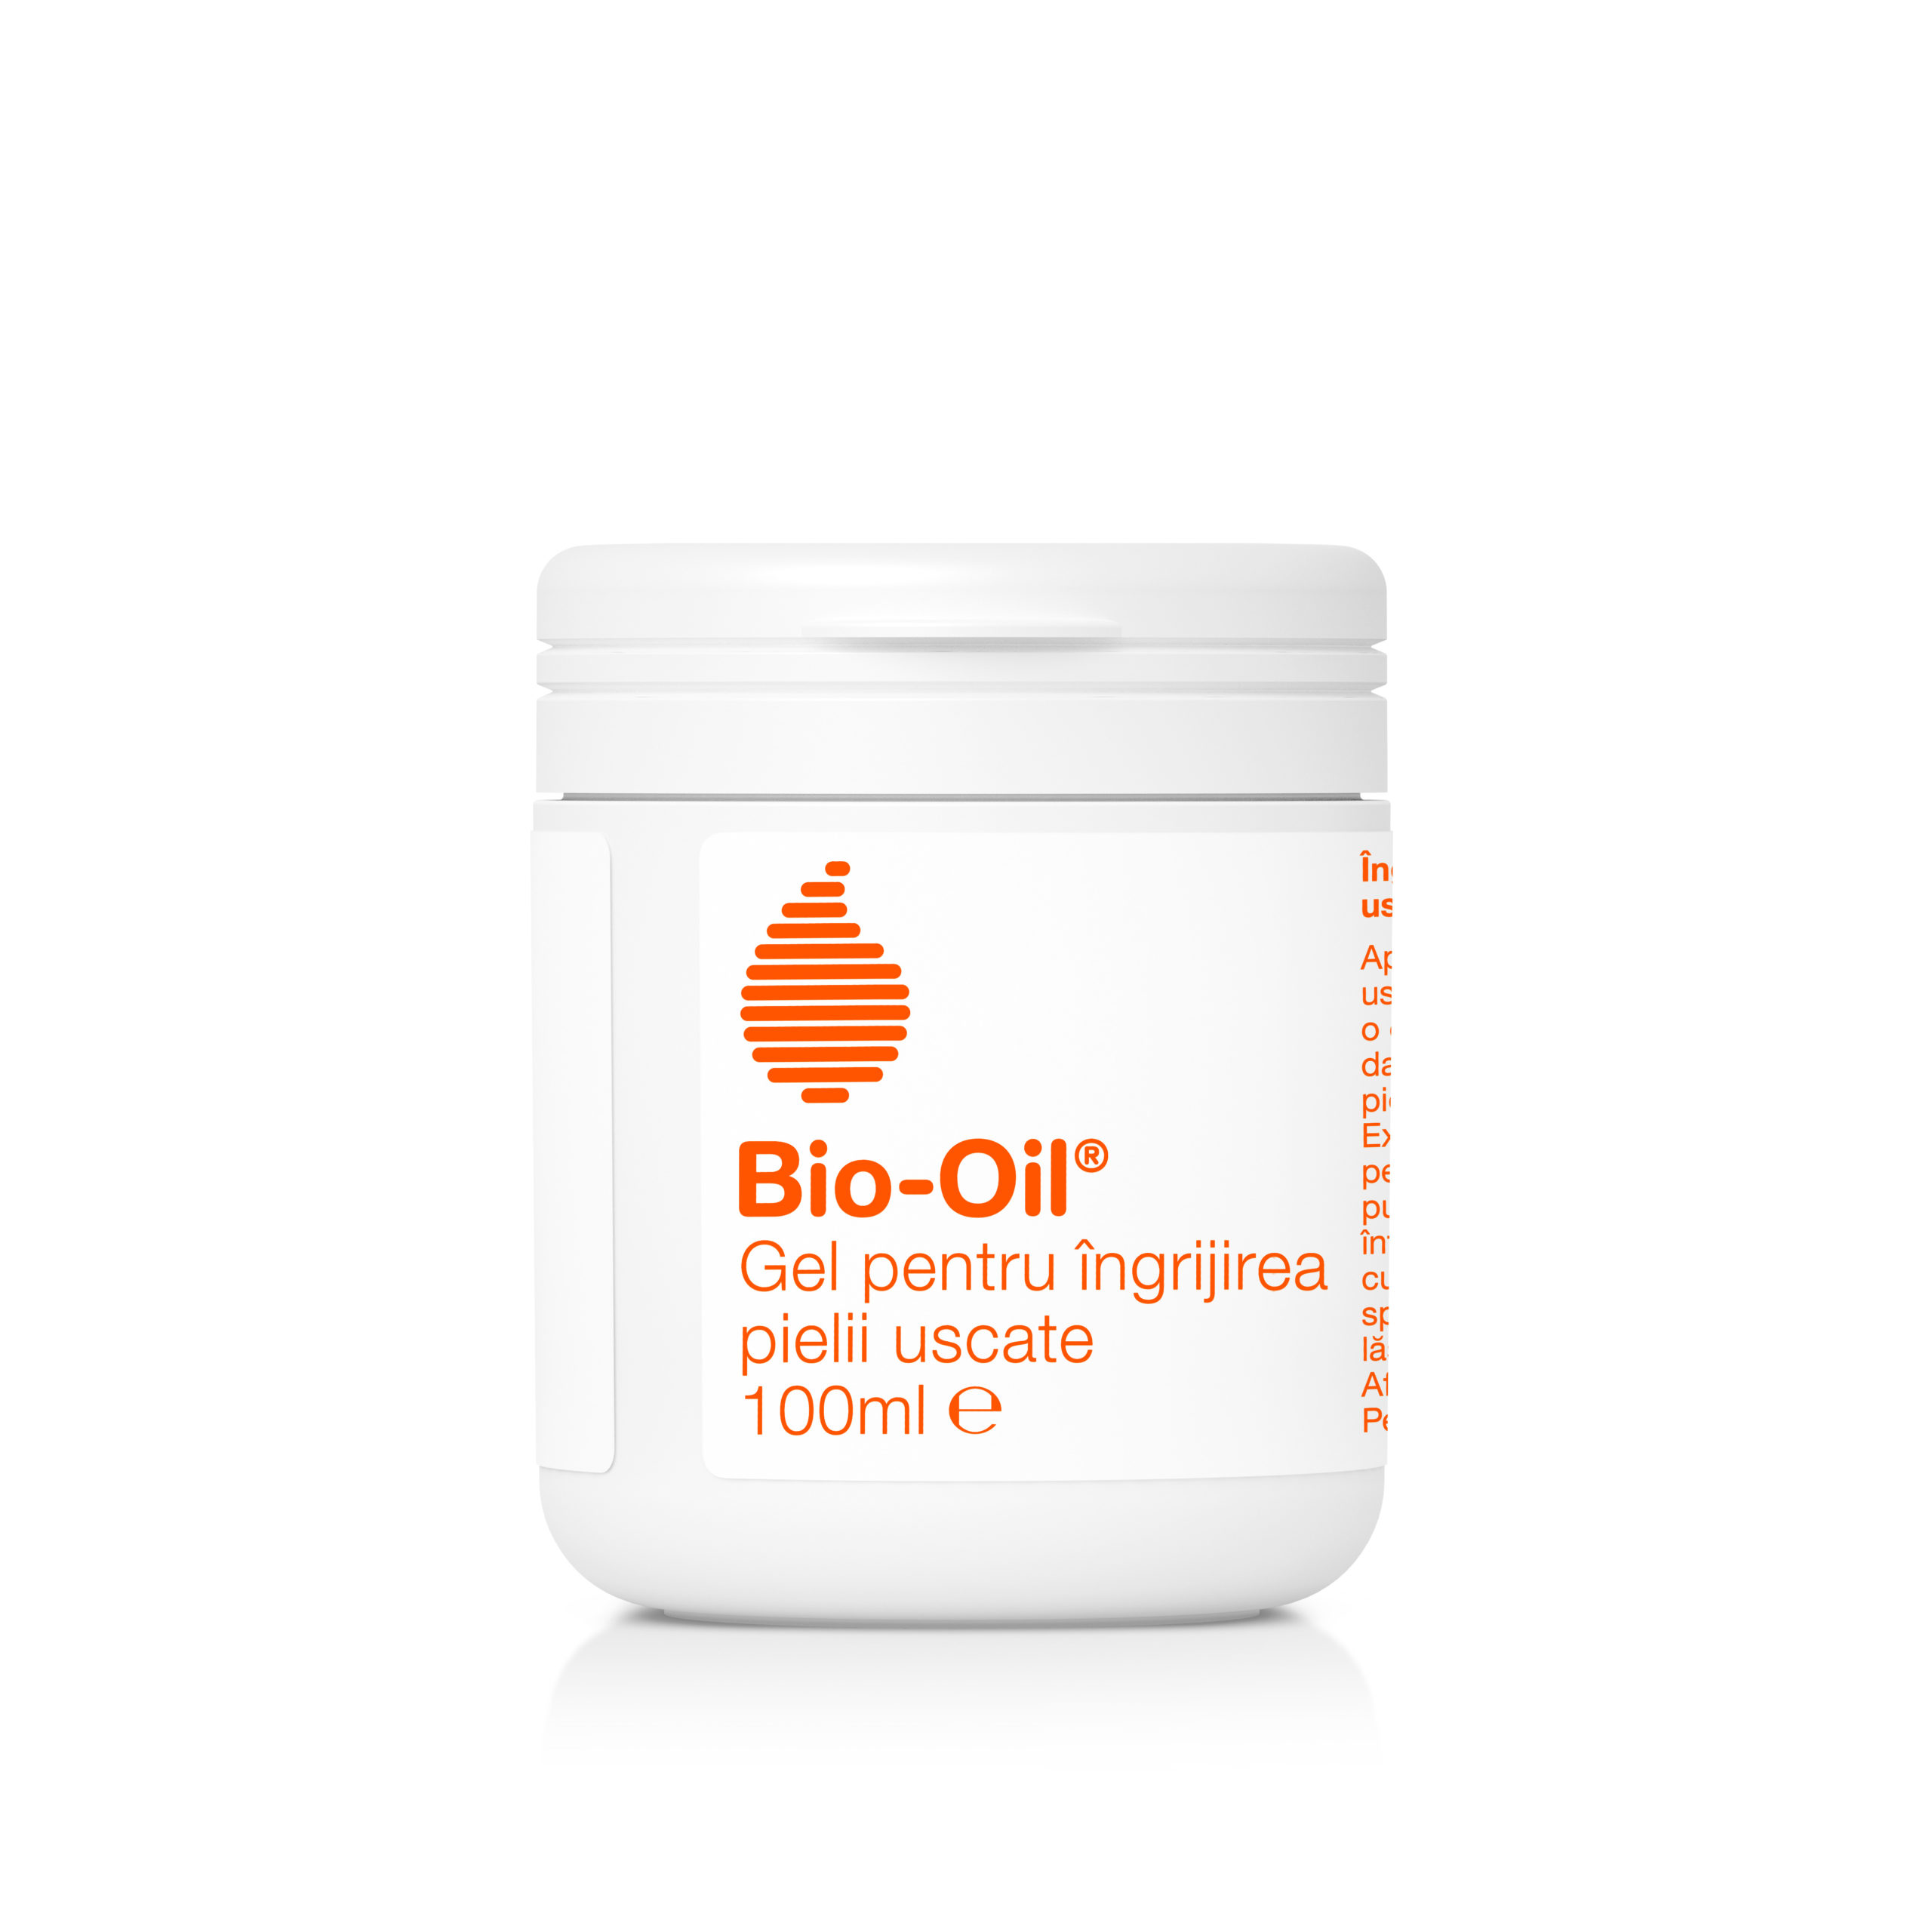 BIO OIL GEL PENTRU INGRIJIREA PIELII USCATE 100ML Bio-Oil